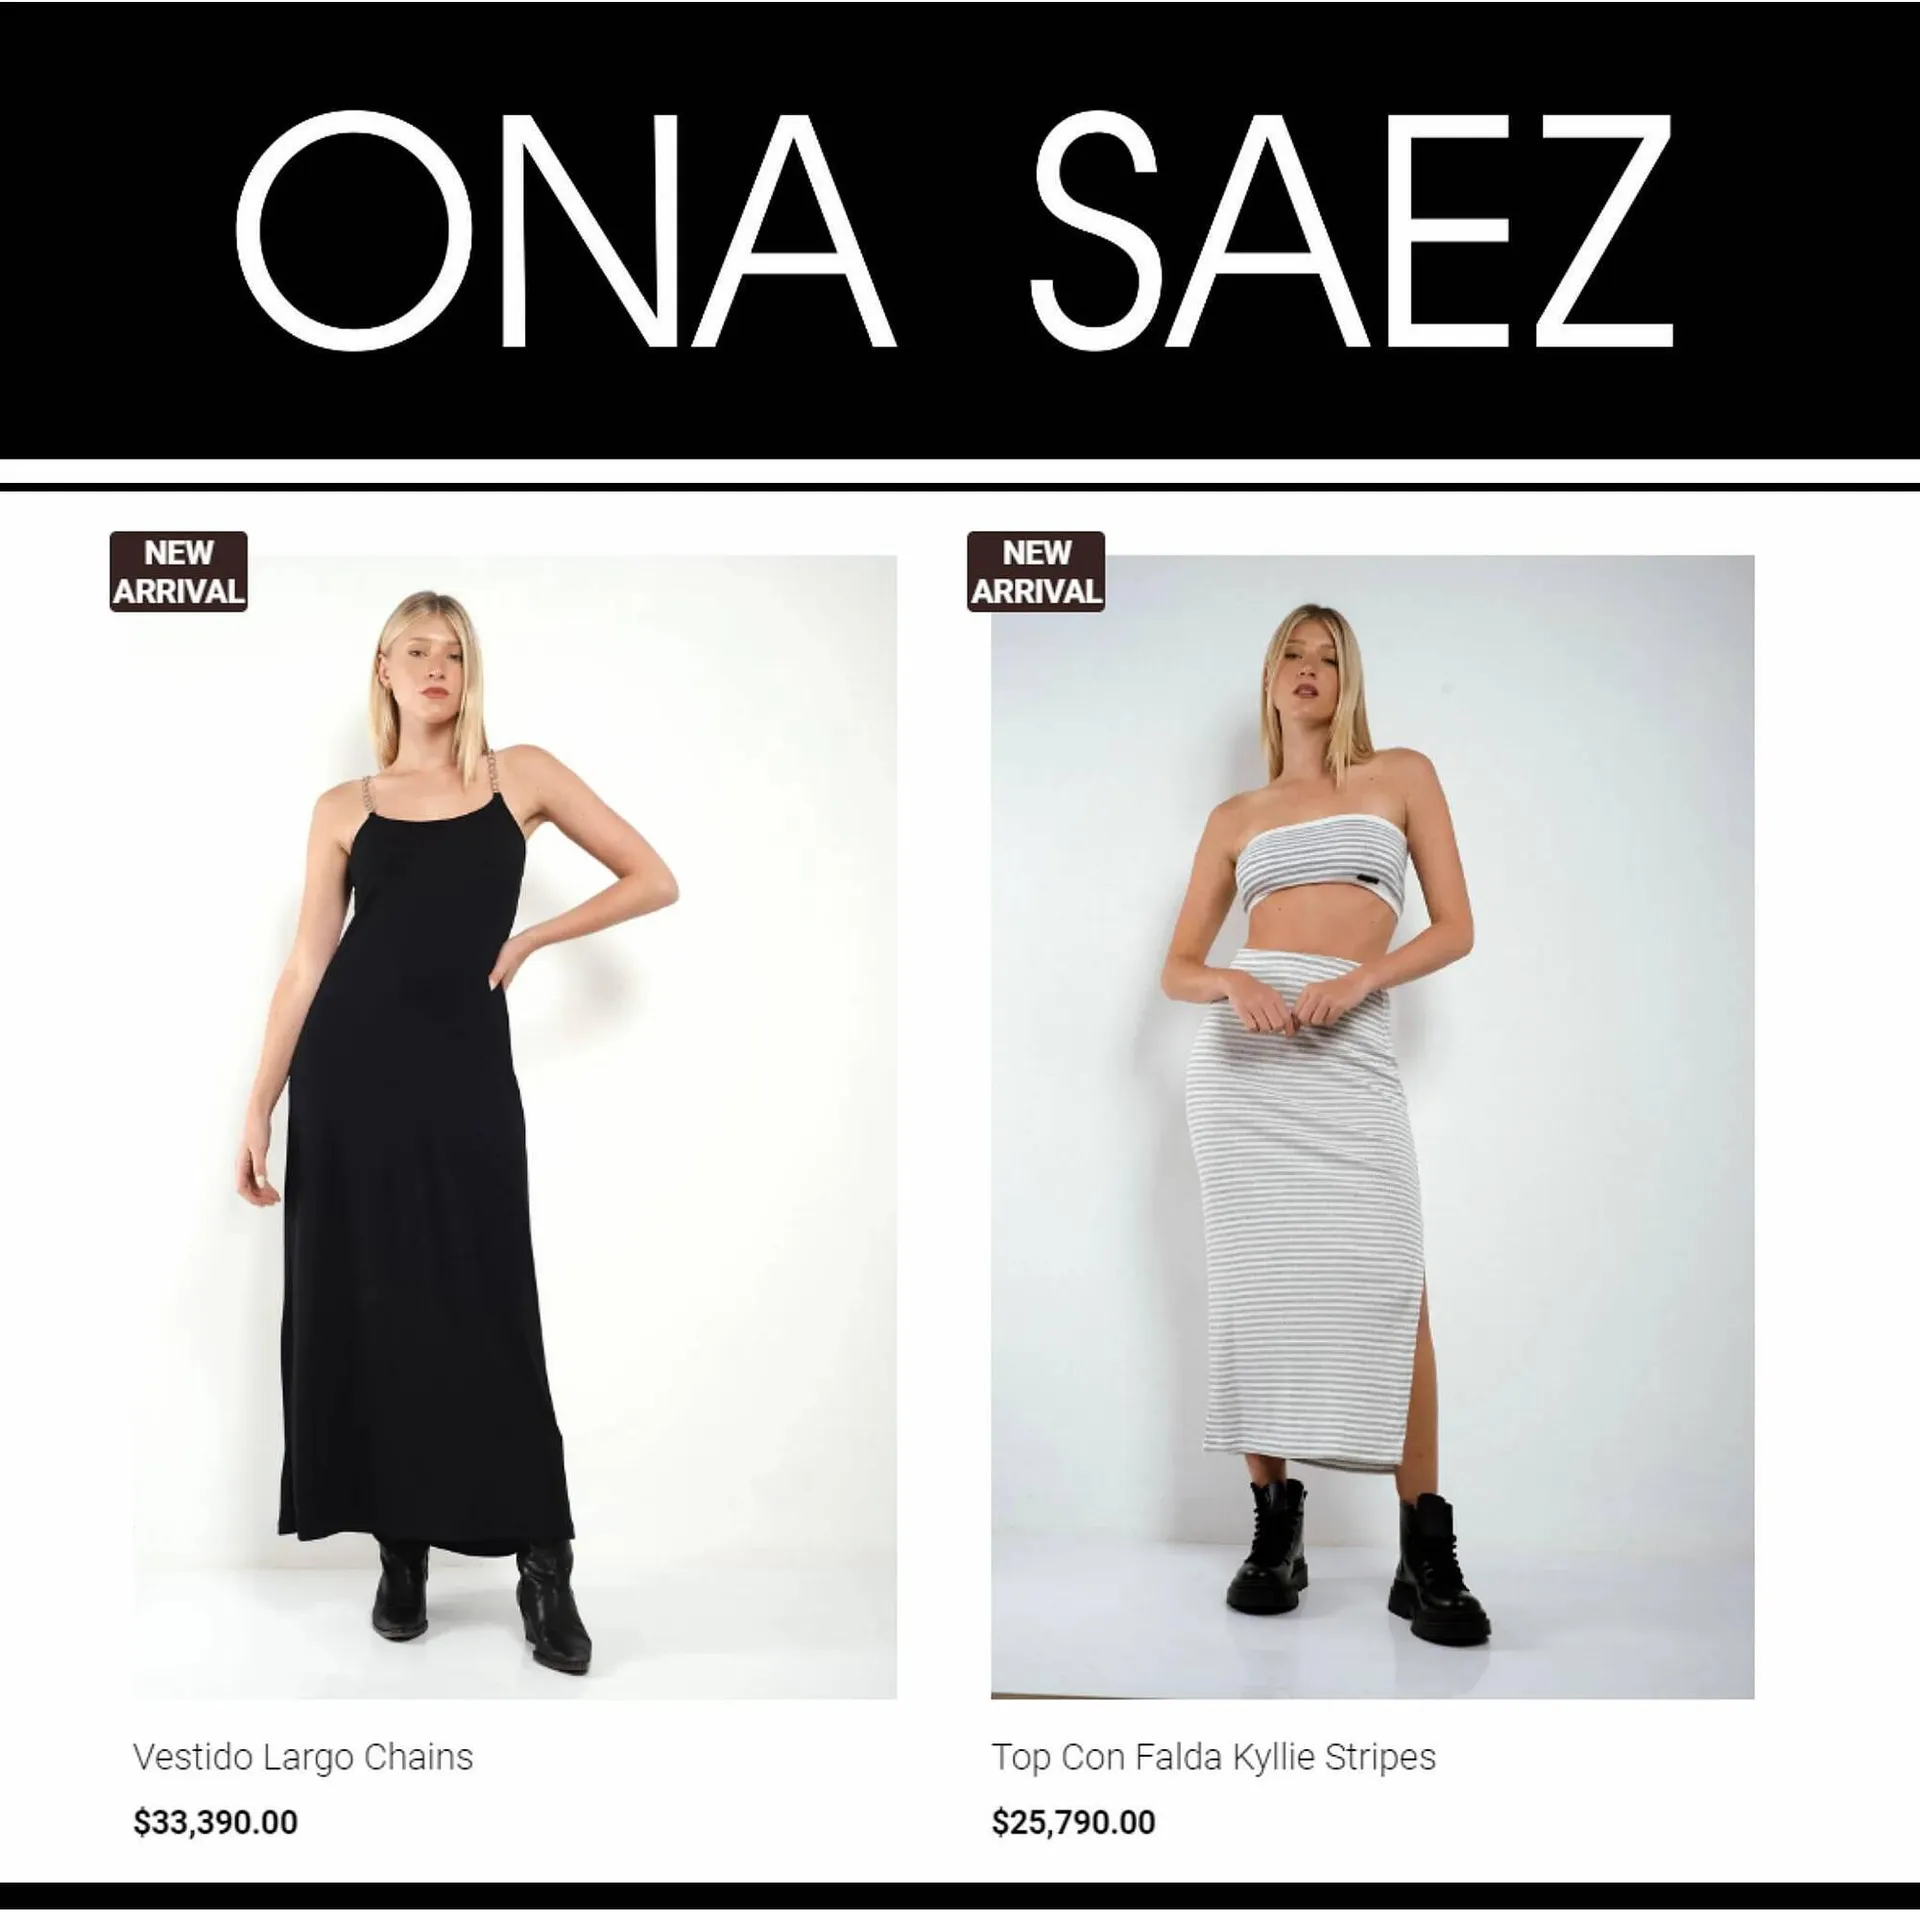 Catálogo Ona Saez - 2